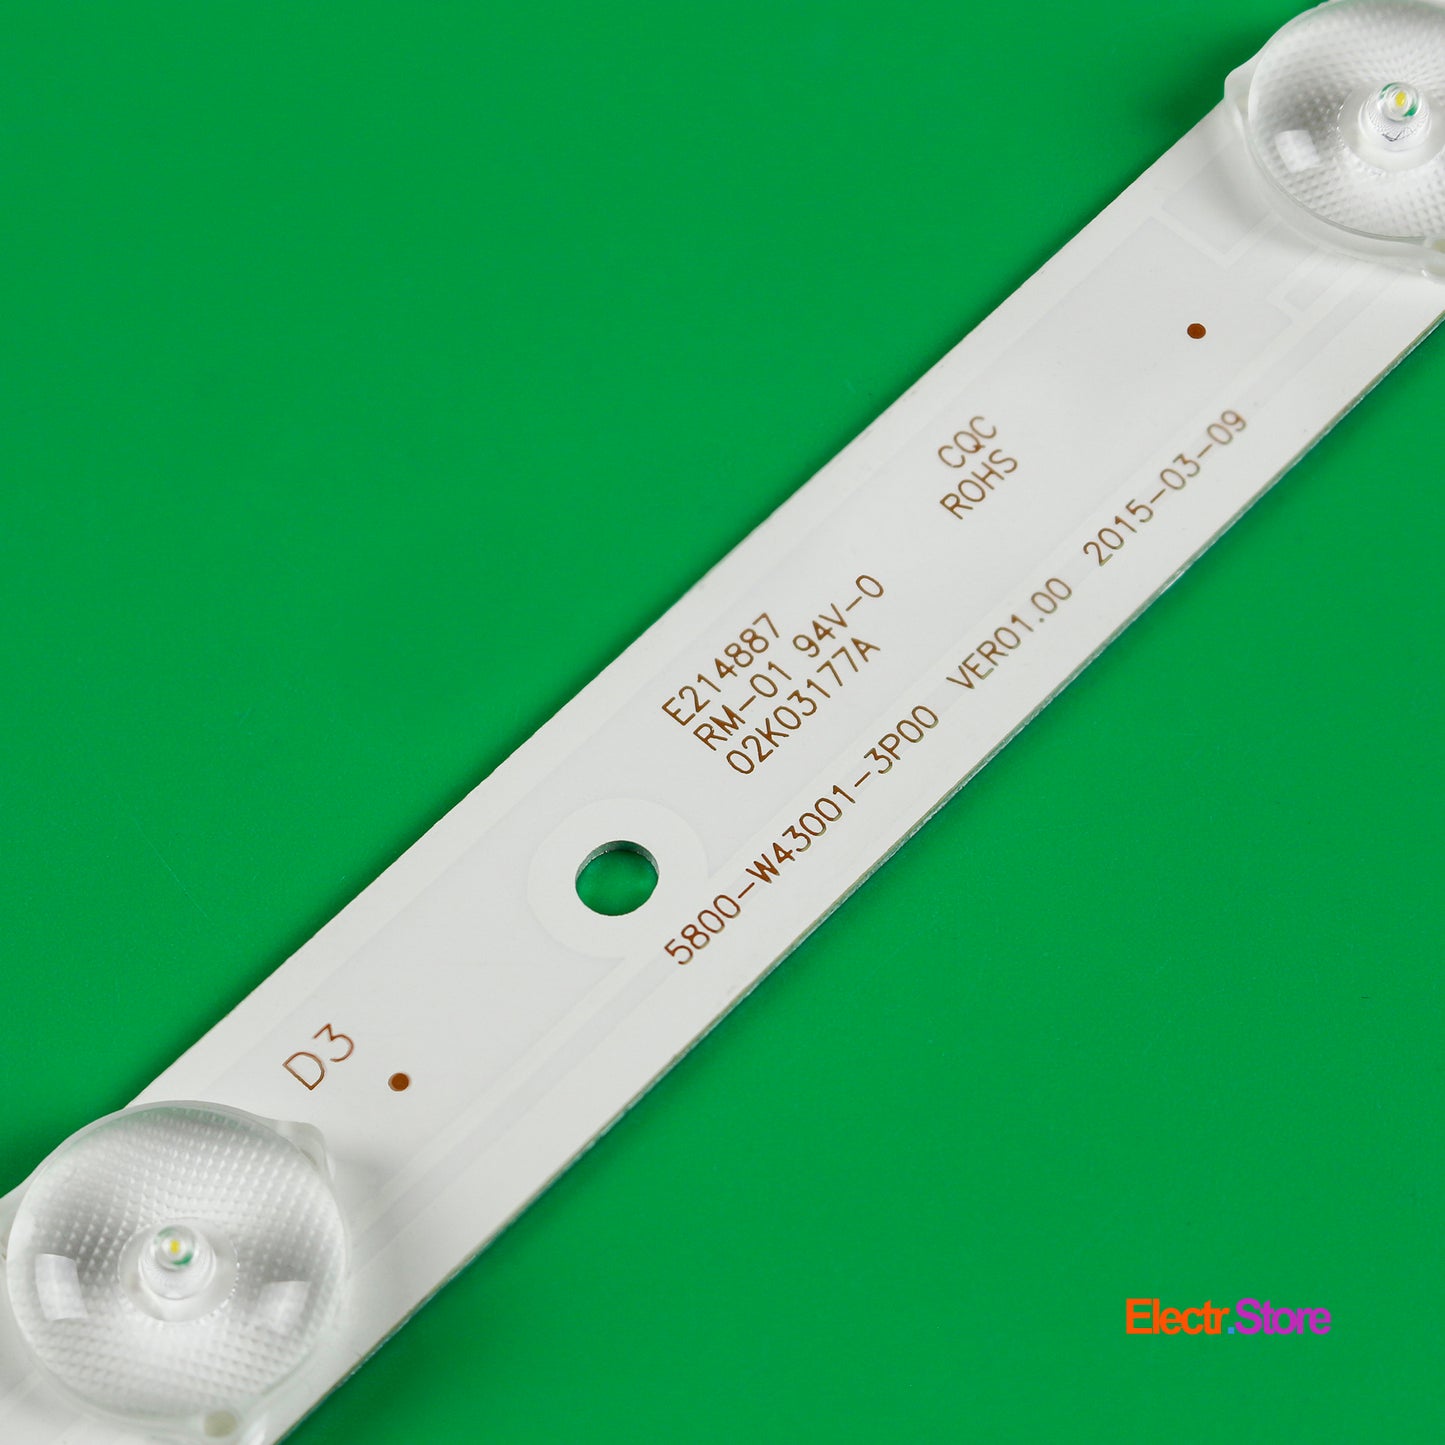 LED Backlight Strip Kits, 5800-W43001-3P00, 5800-W43001-5P00 (8 pcs/kit), for TV 42", 43" 42"43" 5800-W43001-3P00 Erisson LED Backlights Polaroid Skyworth Electr.Store